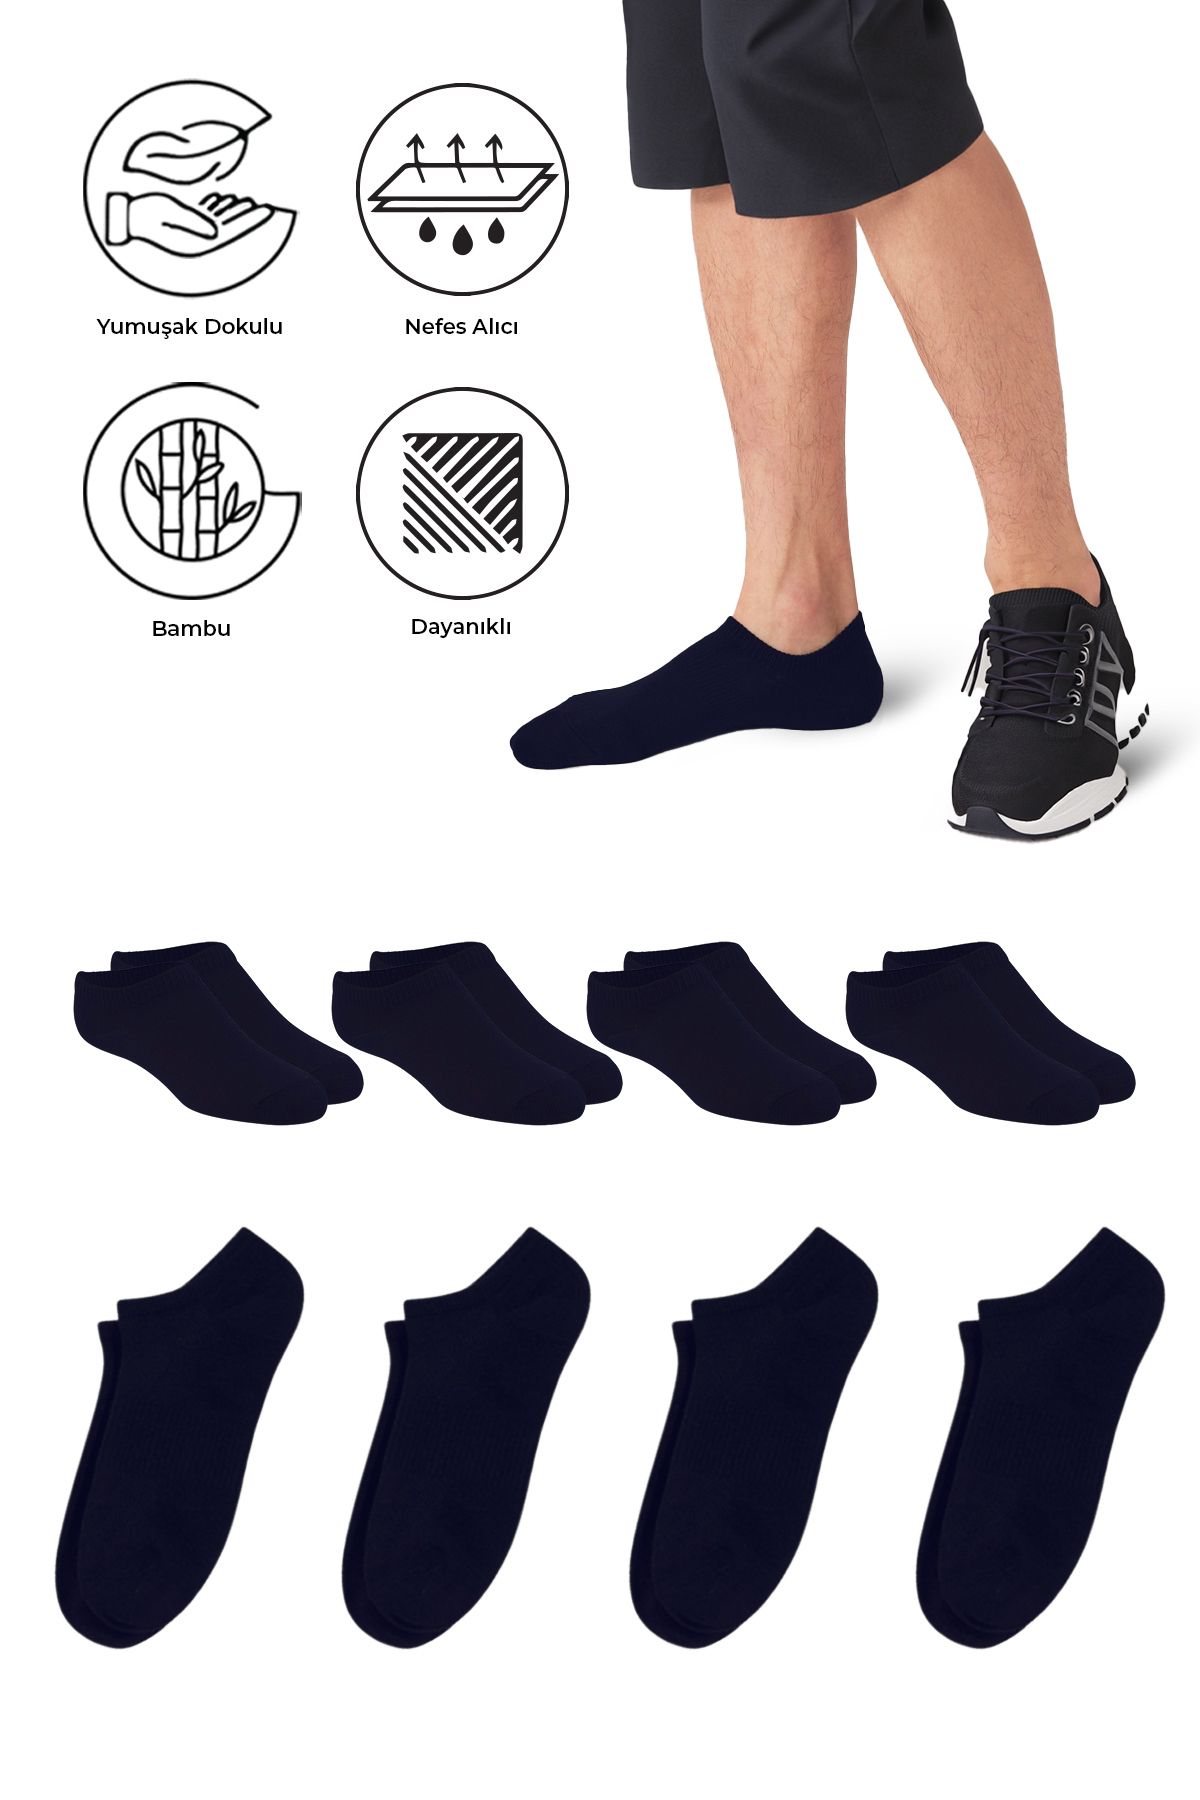 SAYSEZ Bambu Erkek Sneaker Koyu Lacivert Çorap Dikişsiz Görünmez Bilekte Spor Çorap Premium 4'lü Paket